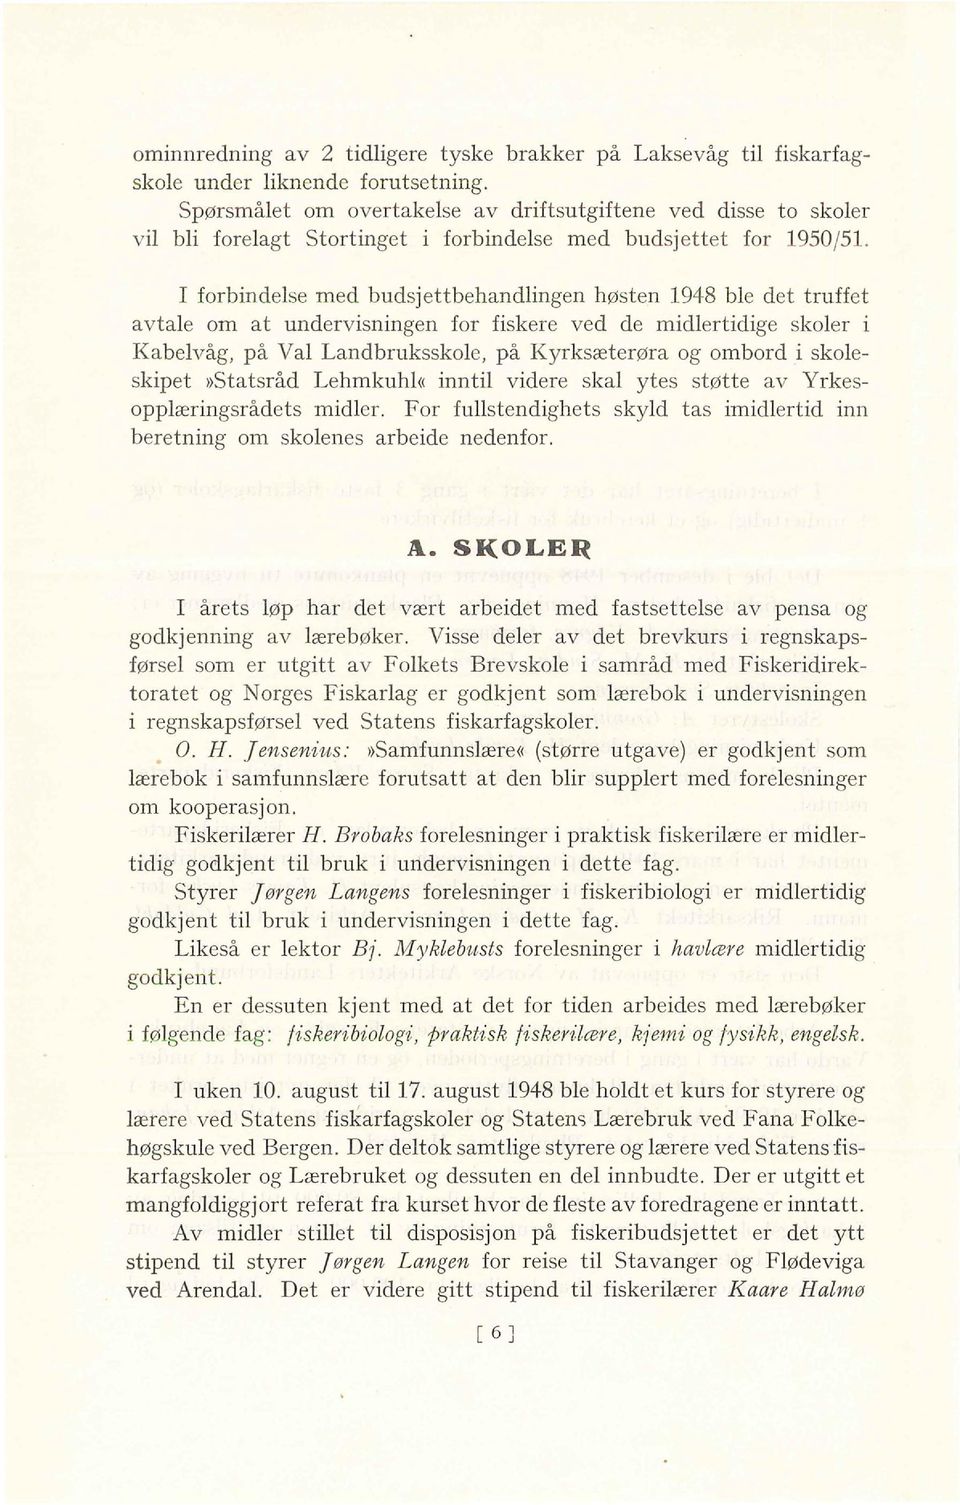 I forbindelse med budsjettbehandlingen høsten 1948 ble det truffet avtale om at undervisningen for fiskere ved de midlertidige skoler i Kabelvåg, på Val Landbruksskole, på Kyrksæterøra og ombord i